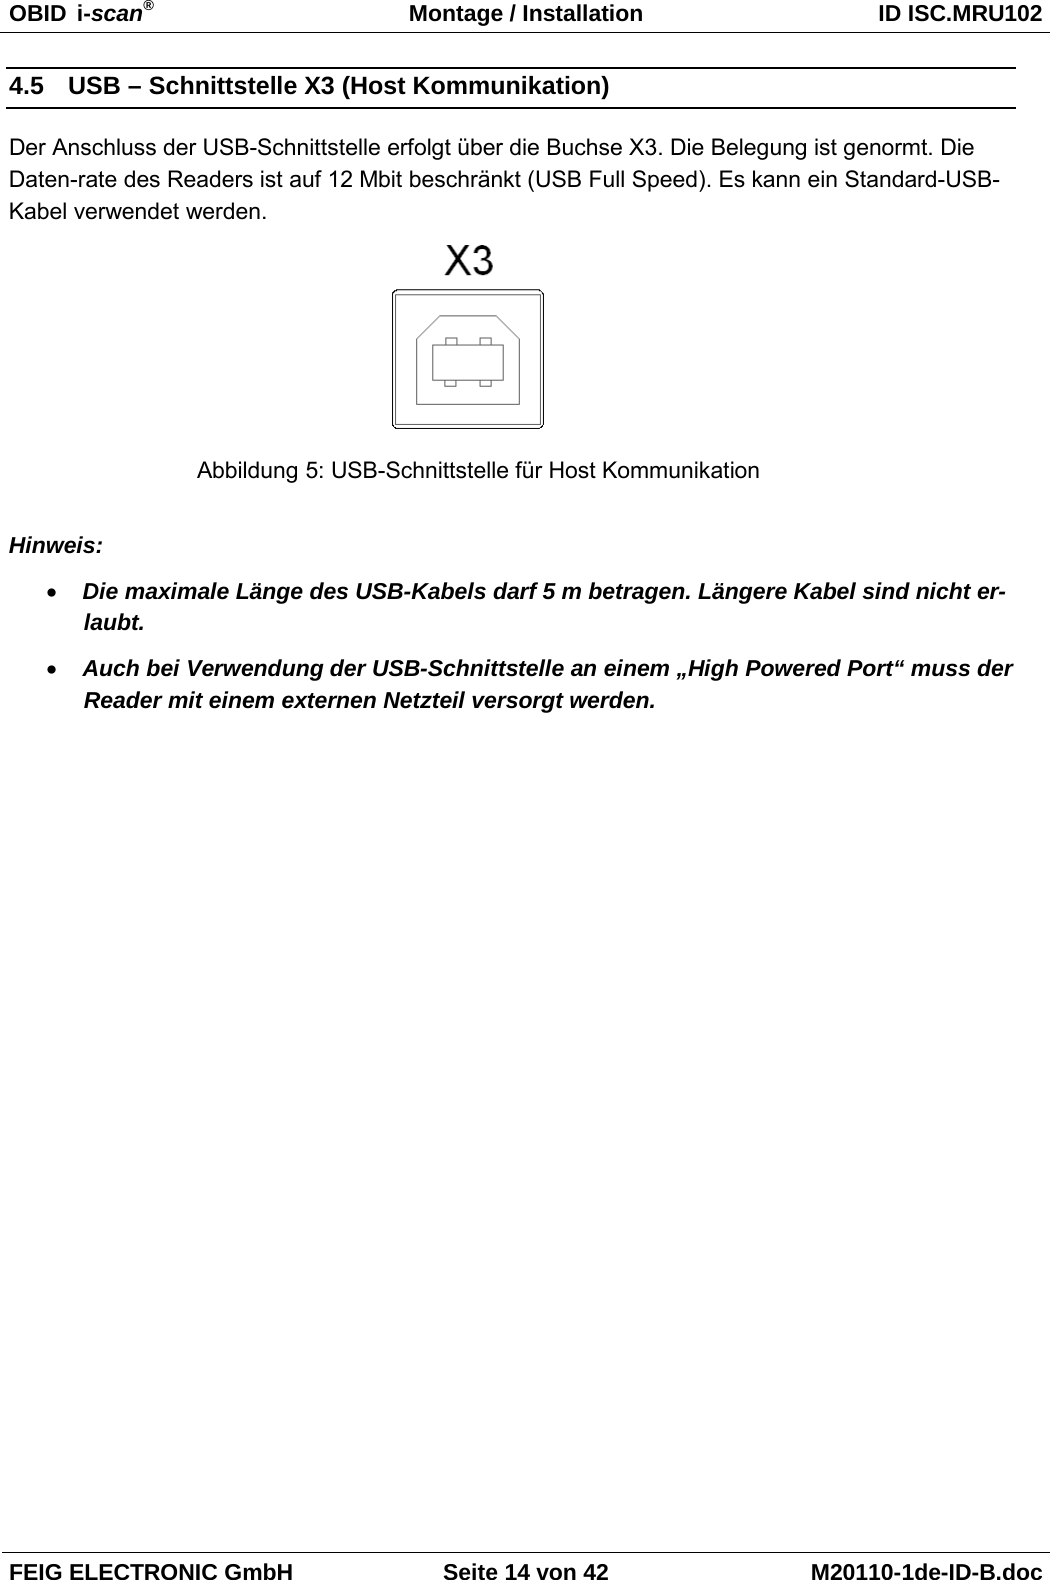 OBID  i-scan® Montage / Installation ID ISC.MRU102  FEIG ELECTRONIC GmbH Seite 14 von 42 M20110-1de-ID-B.doc  4.5 USB – Schnittstelle X3 (Host Kommunikation) Der Anschluss der USB-Schnittstelle erfolgt über die Buchse X3. Die Belegung ist genormt. Die Daten-rate des Readers ist auf 12 Mbit beschränkt (USB Full Speed). Es kann ein Standard-USB-Kabel verwendet werden.   Hinweis: • Die maximale Länge des USB-Kabels darf 5 m betragen. Längere Kabel sind nicht er-laubt. • Auch bei Verwendung der USB-Schnittstelle an einem „High Powered Port“ muss der Reader mit einem externen Netzteil versorgt werden. Abbildung 5: USB-Schnittstelle für Host Kommunikation 